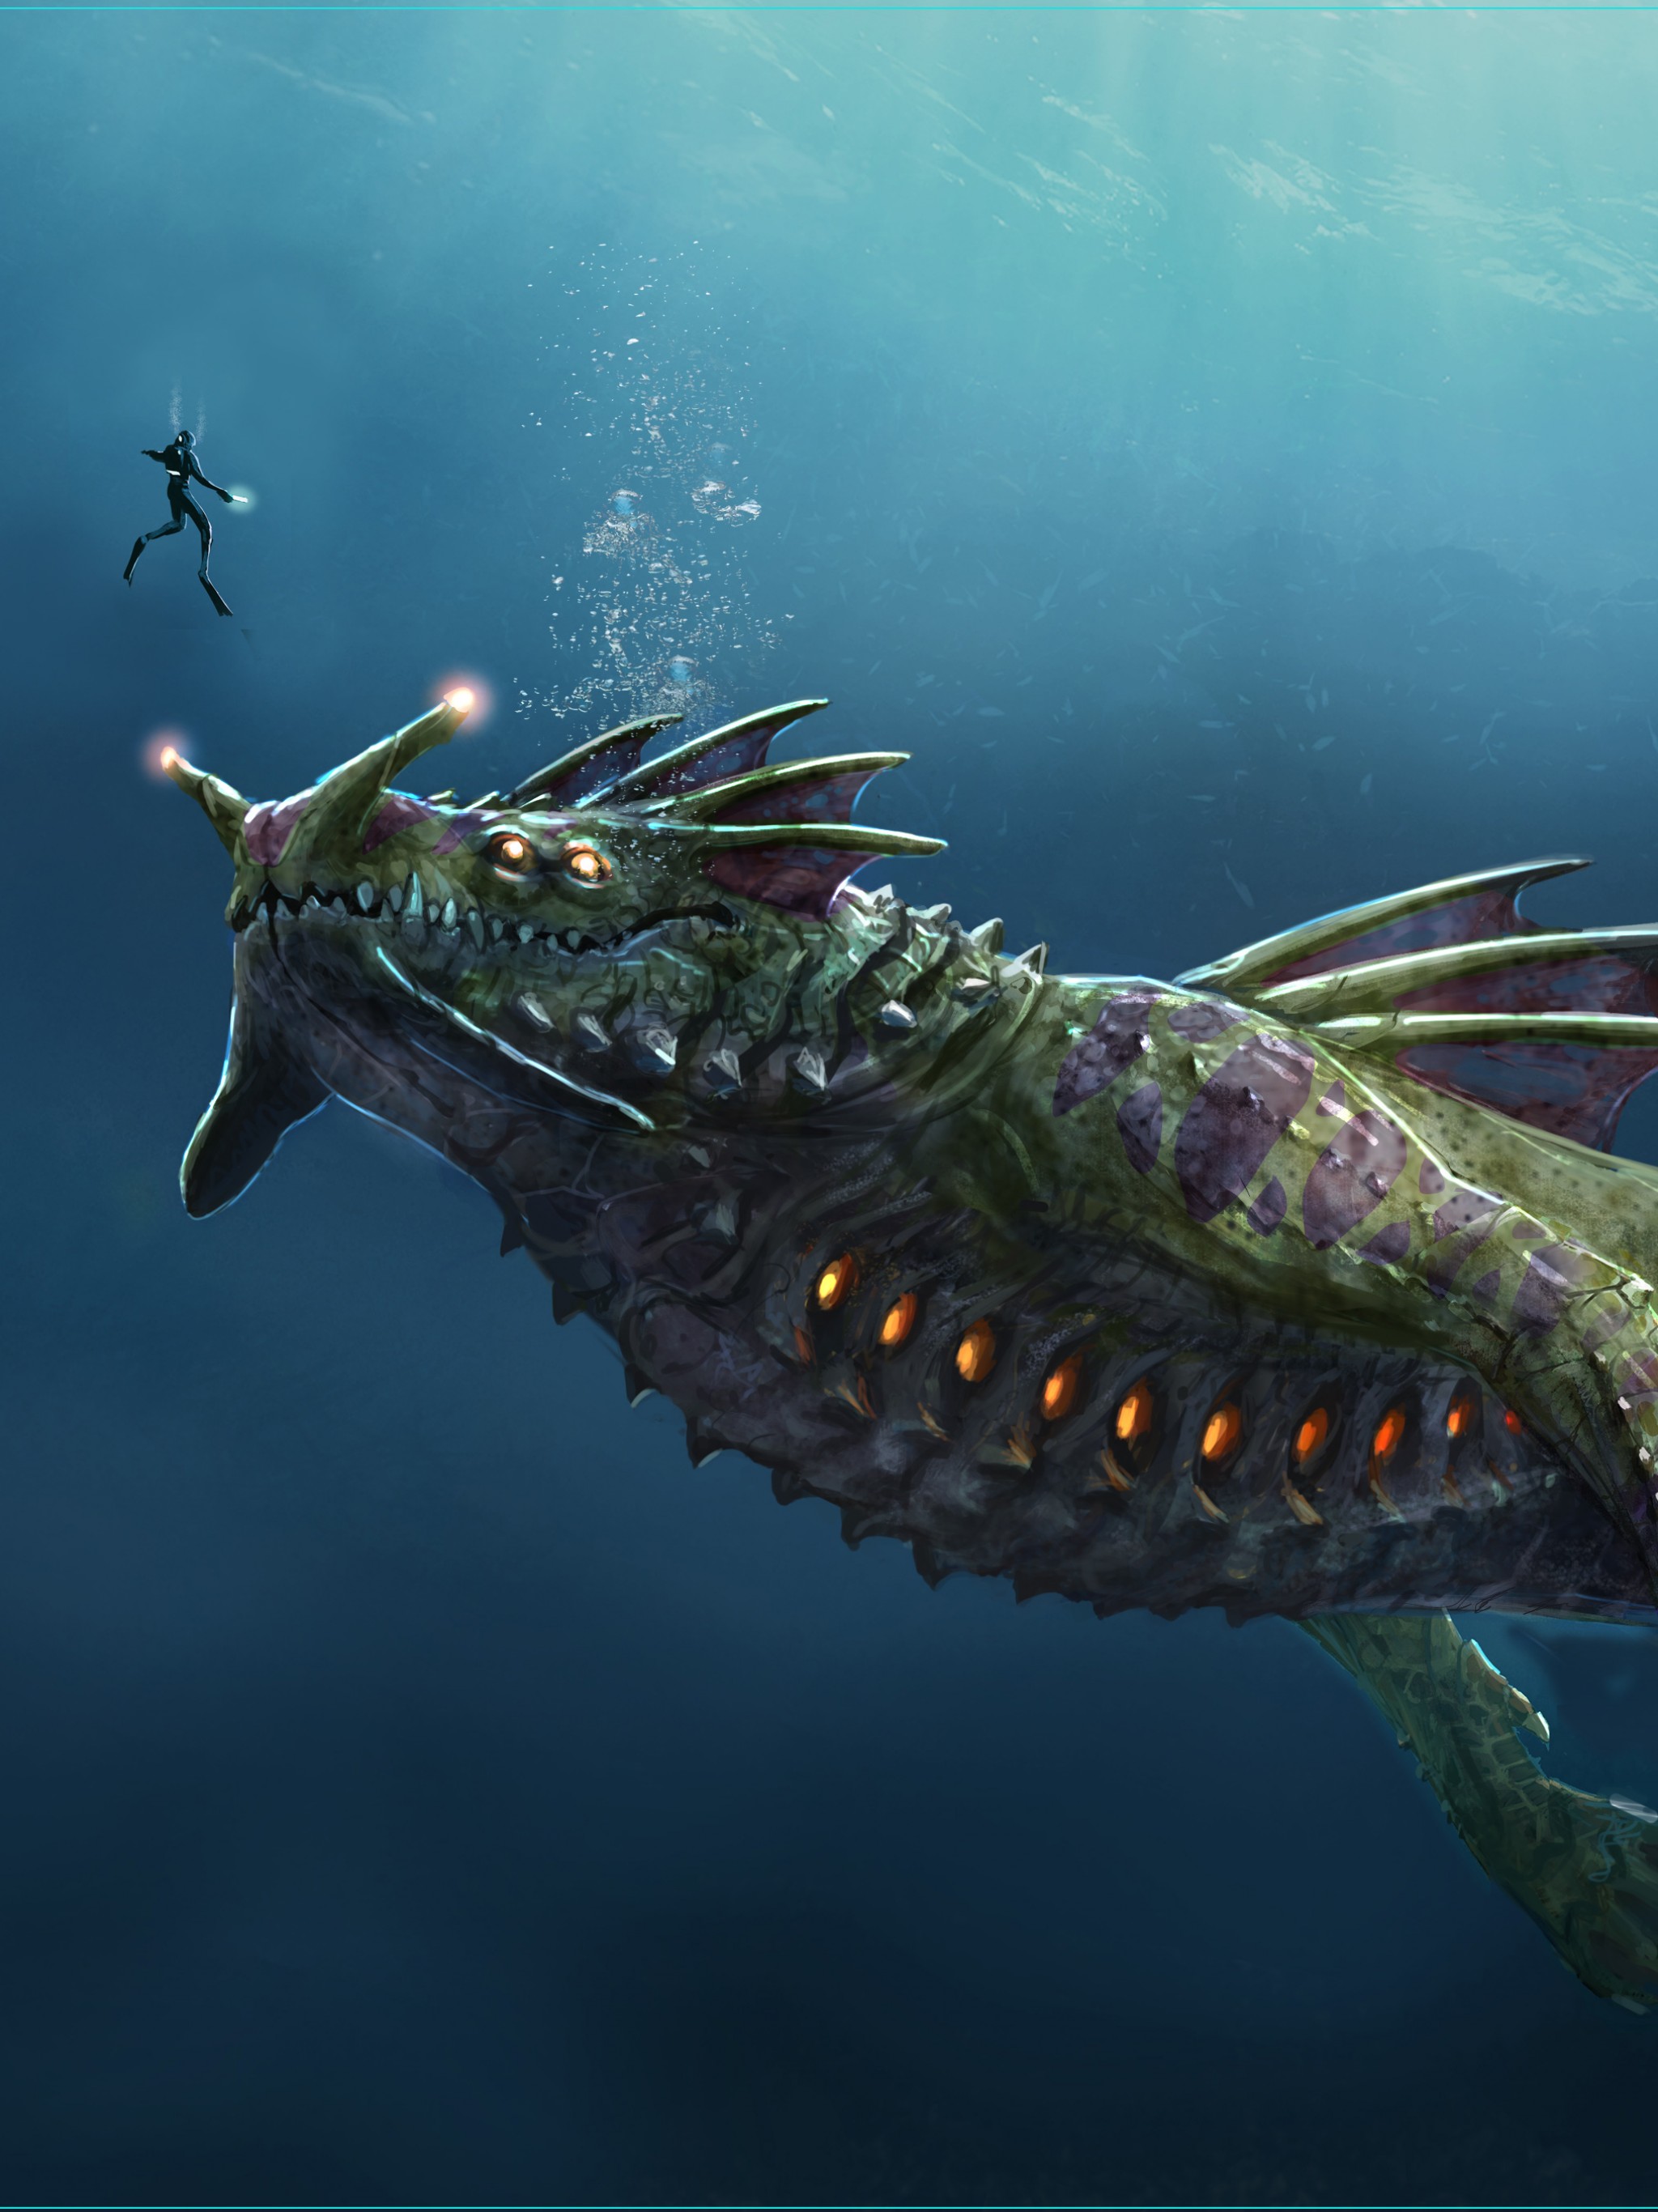 Download Wallpaper - Subnautica Sea Dragon Leviathan , HD Wallpaper & Backgrounds